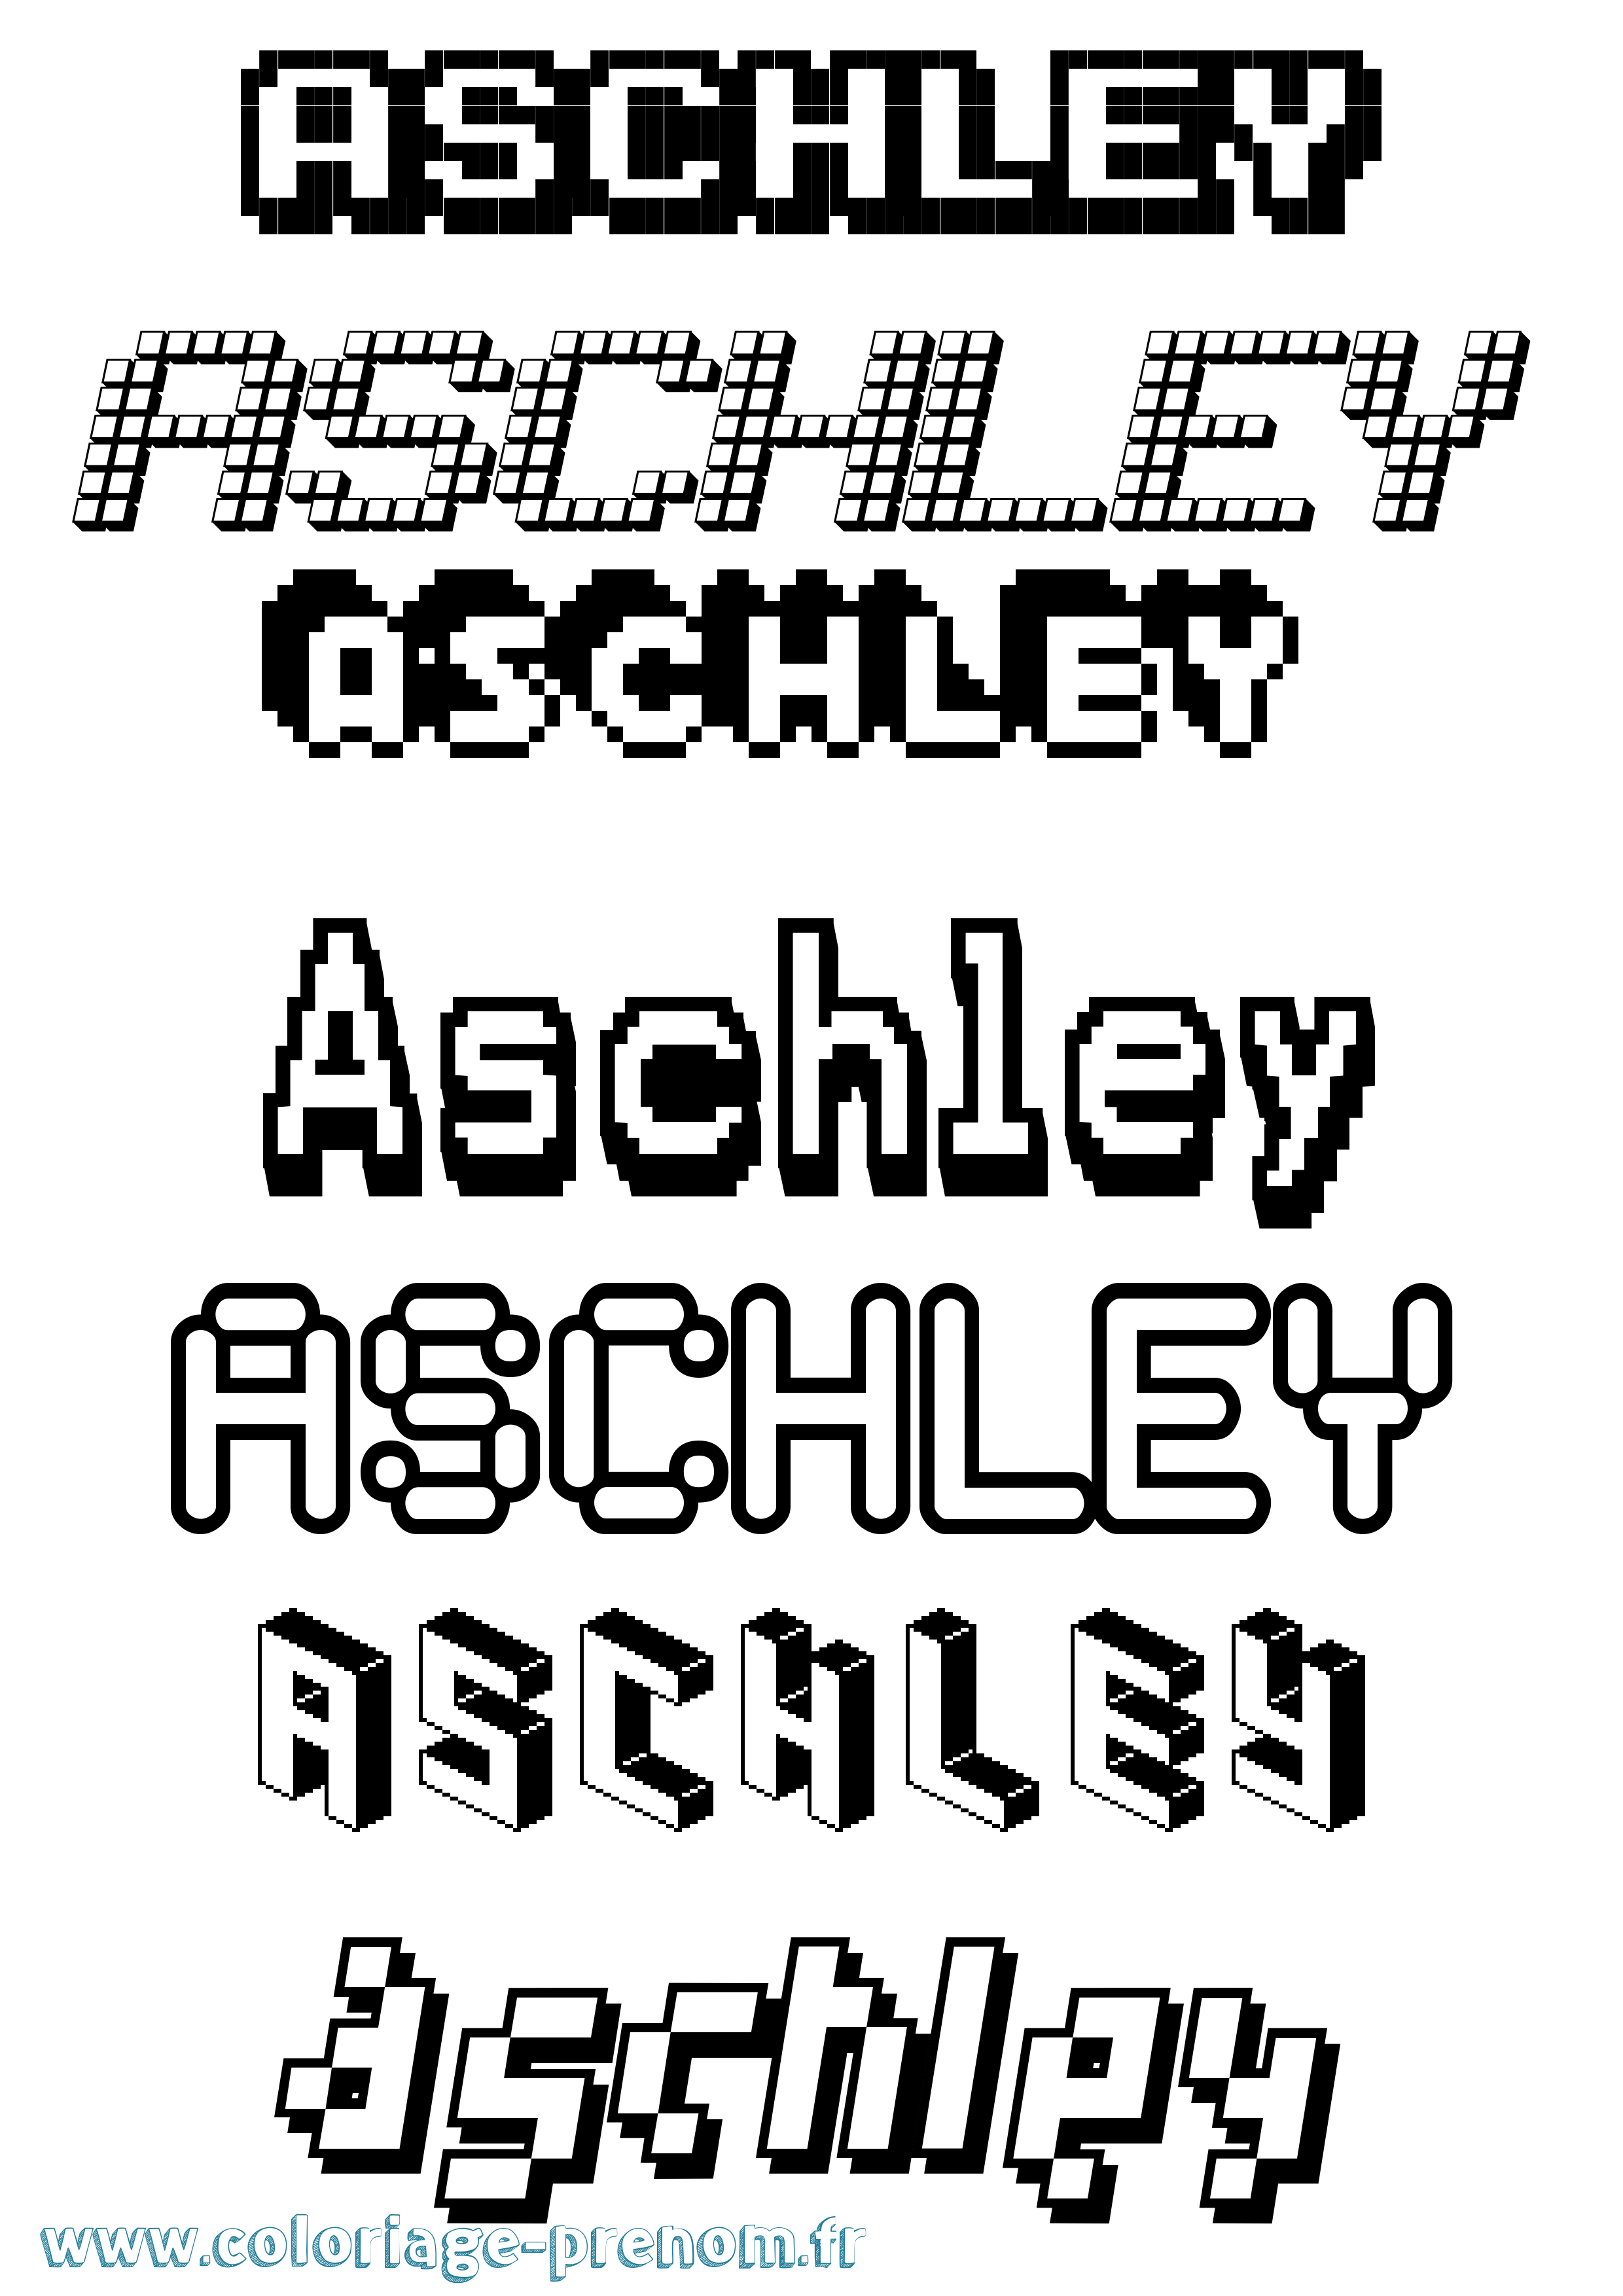 Coloriage prénom Aschley Pixel